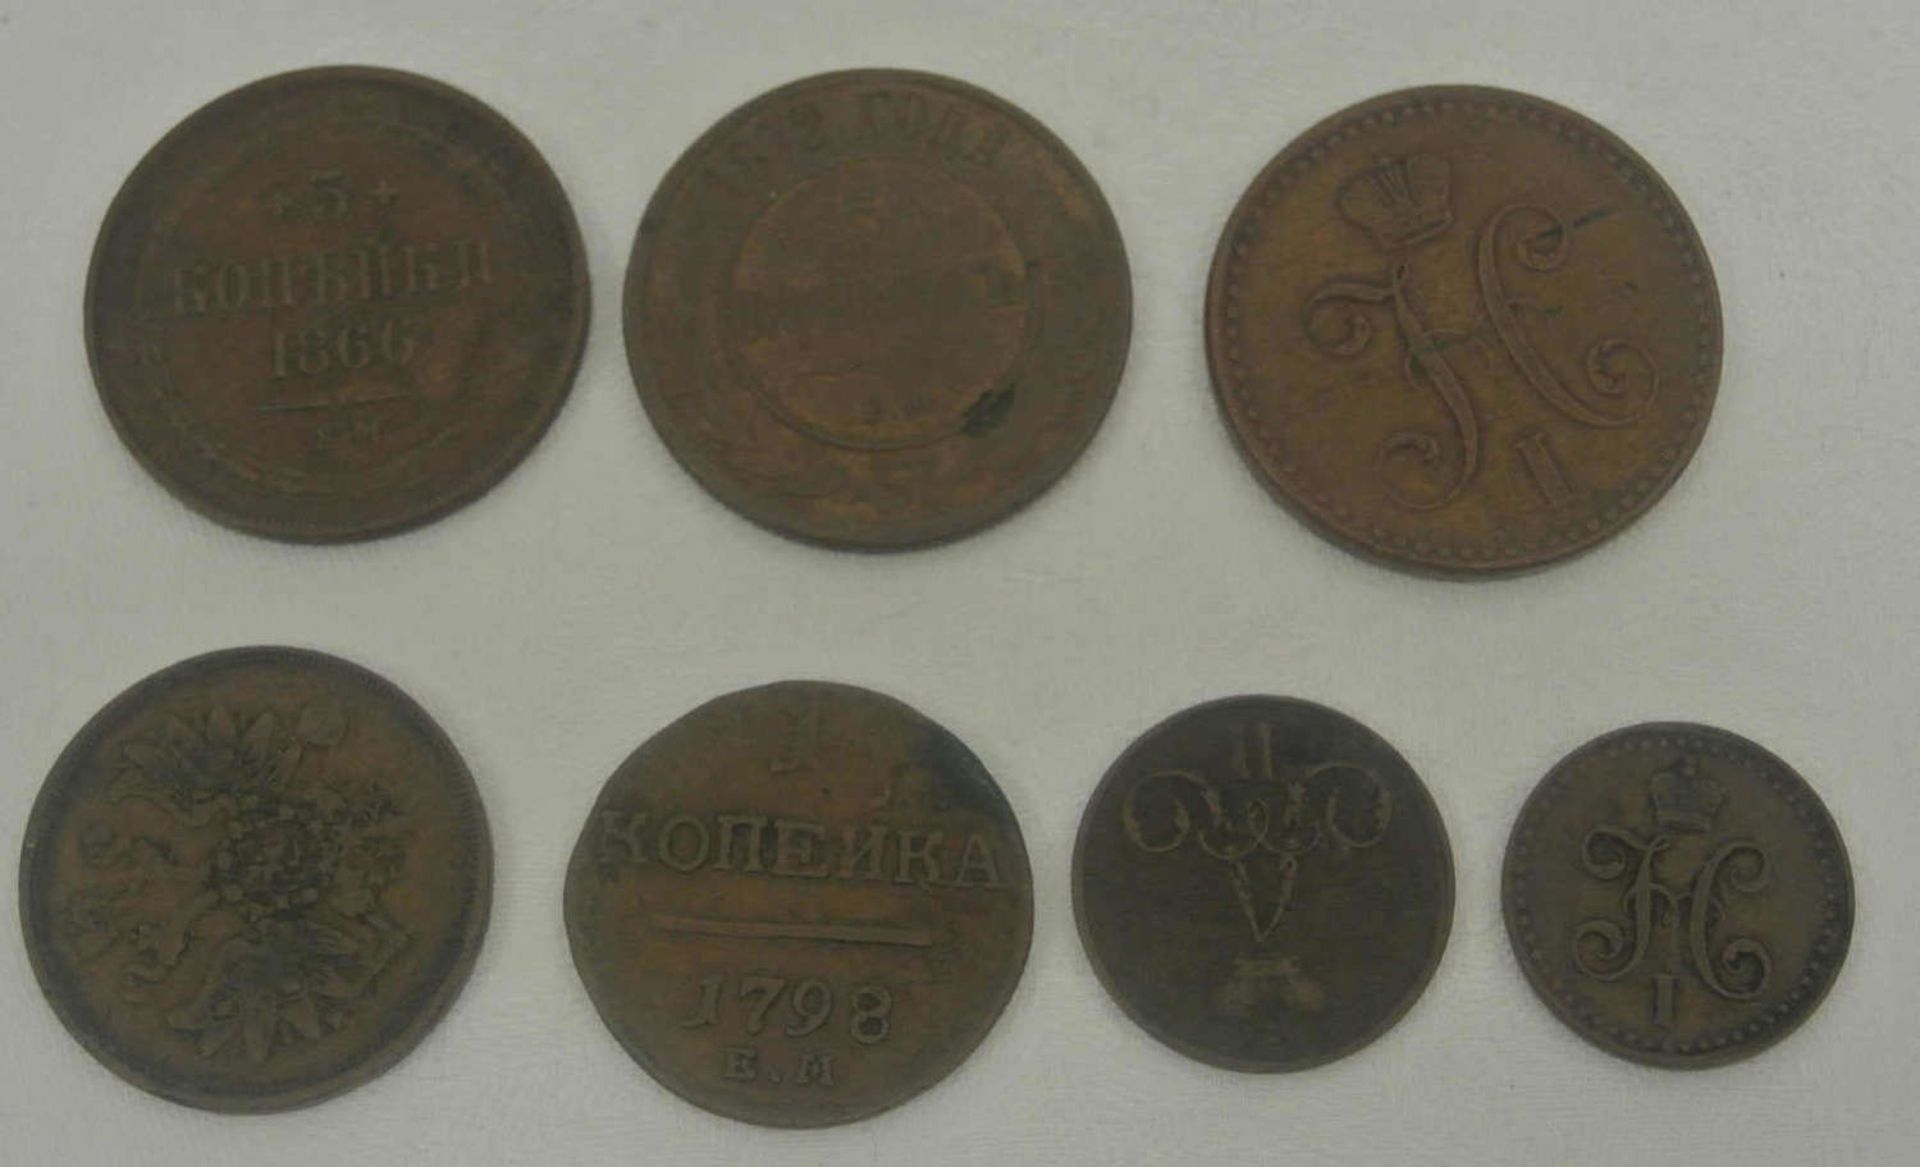 Lot Russland Münzen, Kaiserreich ab 1798, insgesamt 7 Stück. Besichtigung empfohlen. - Bild 2 aus 2